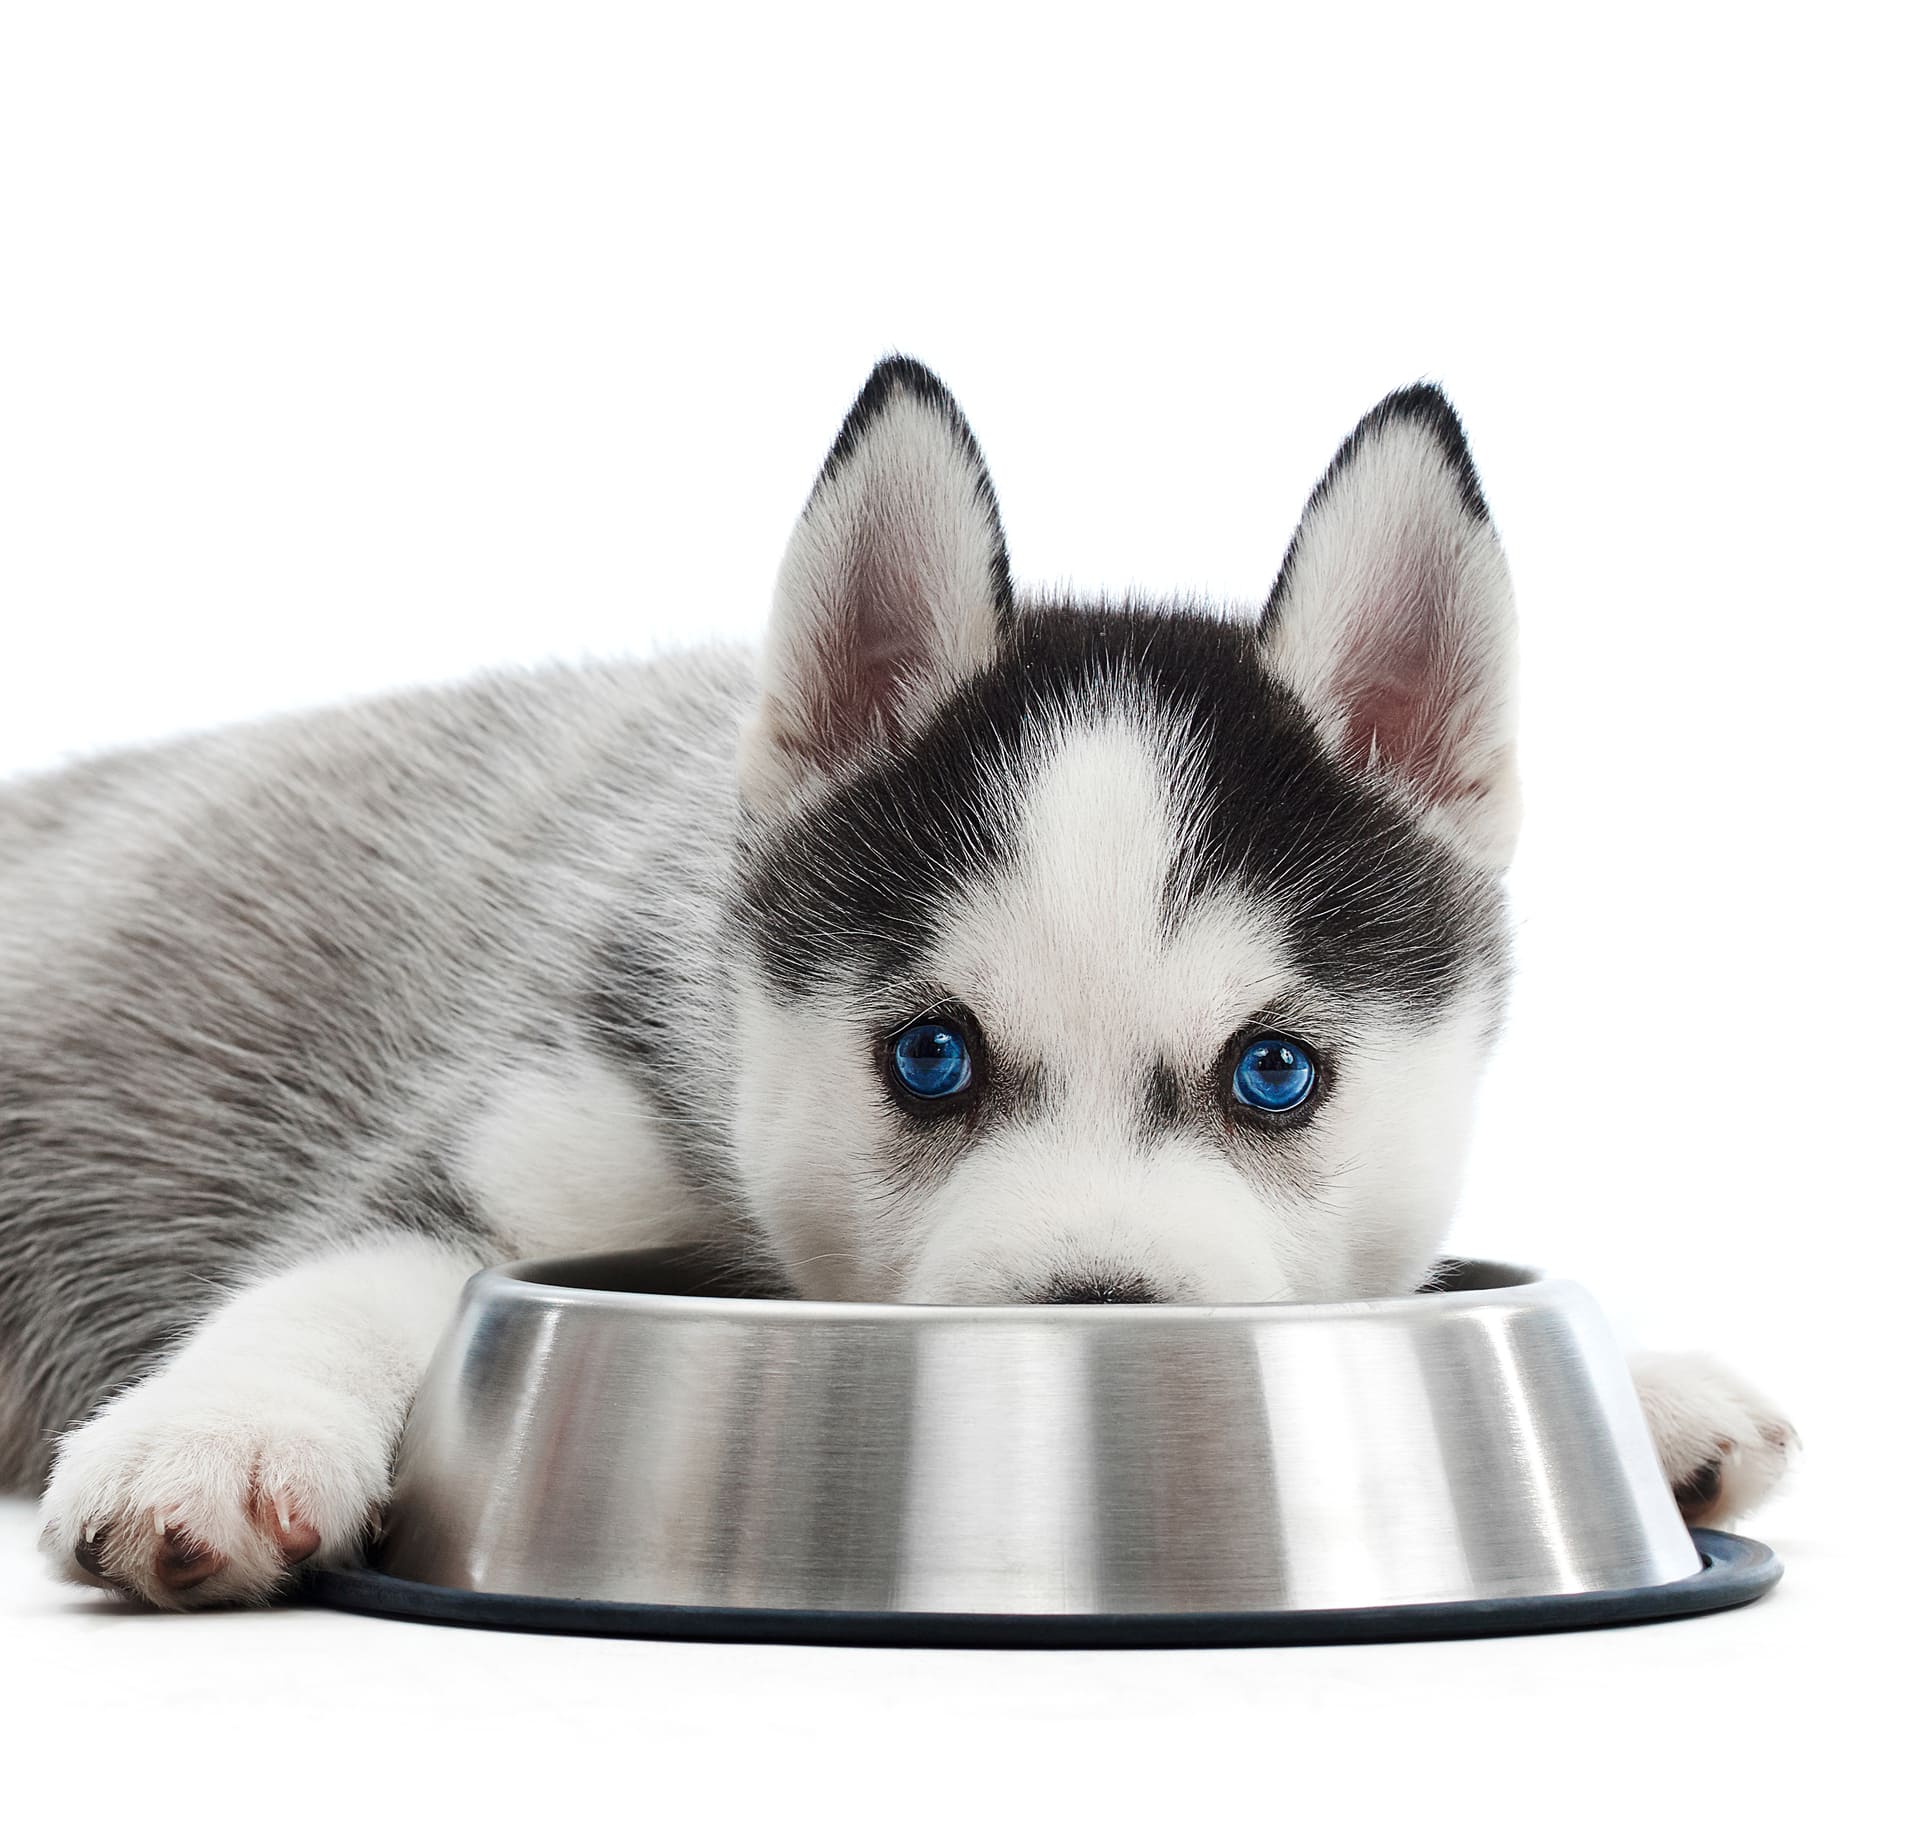 Alimentación saludable para perros